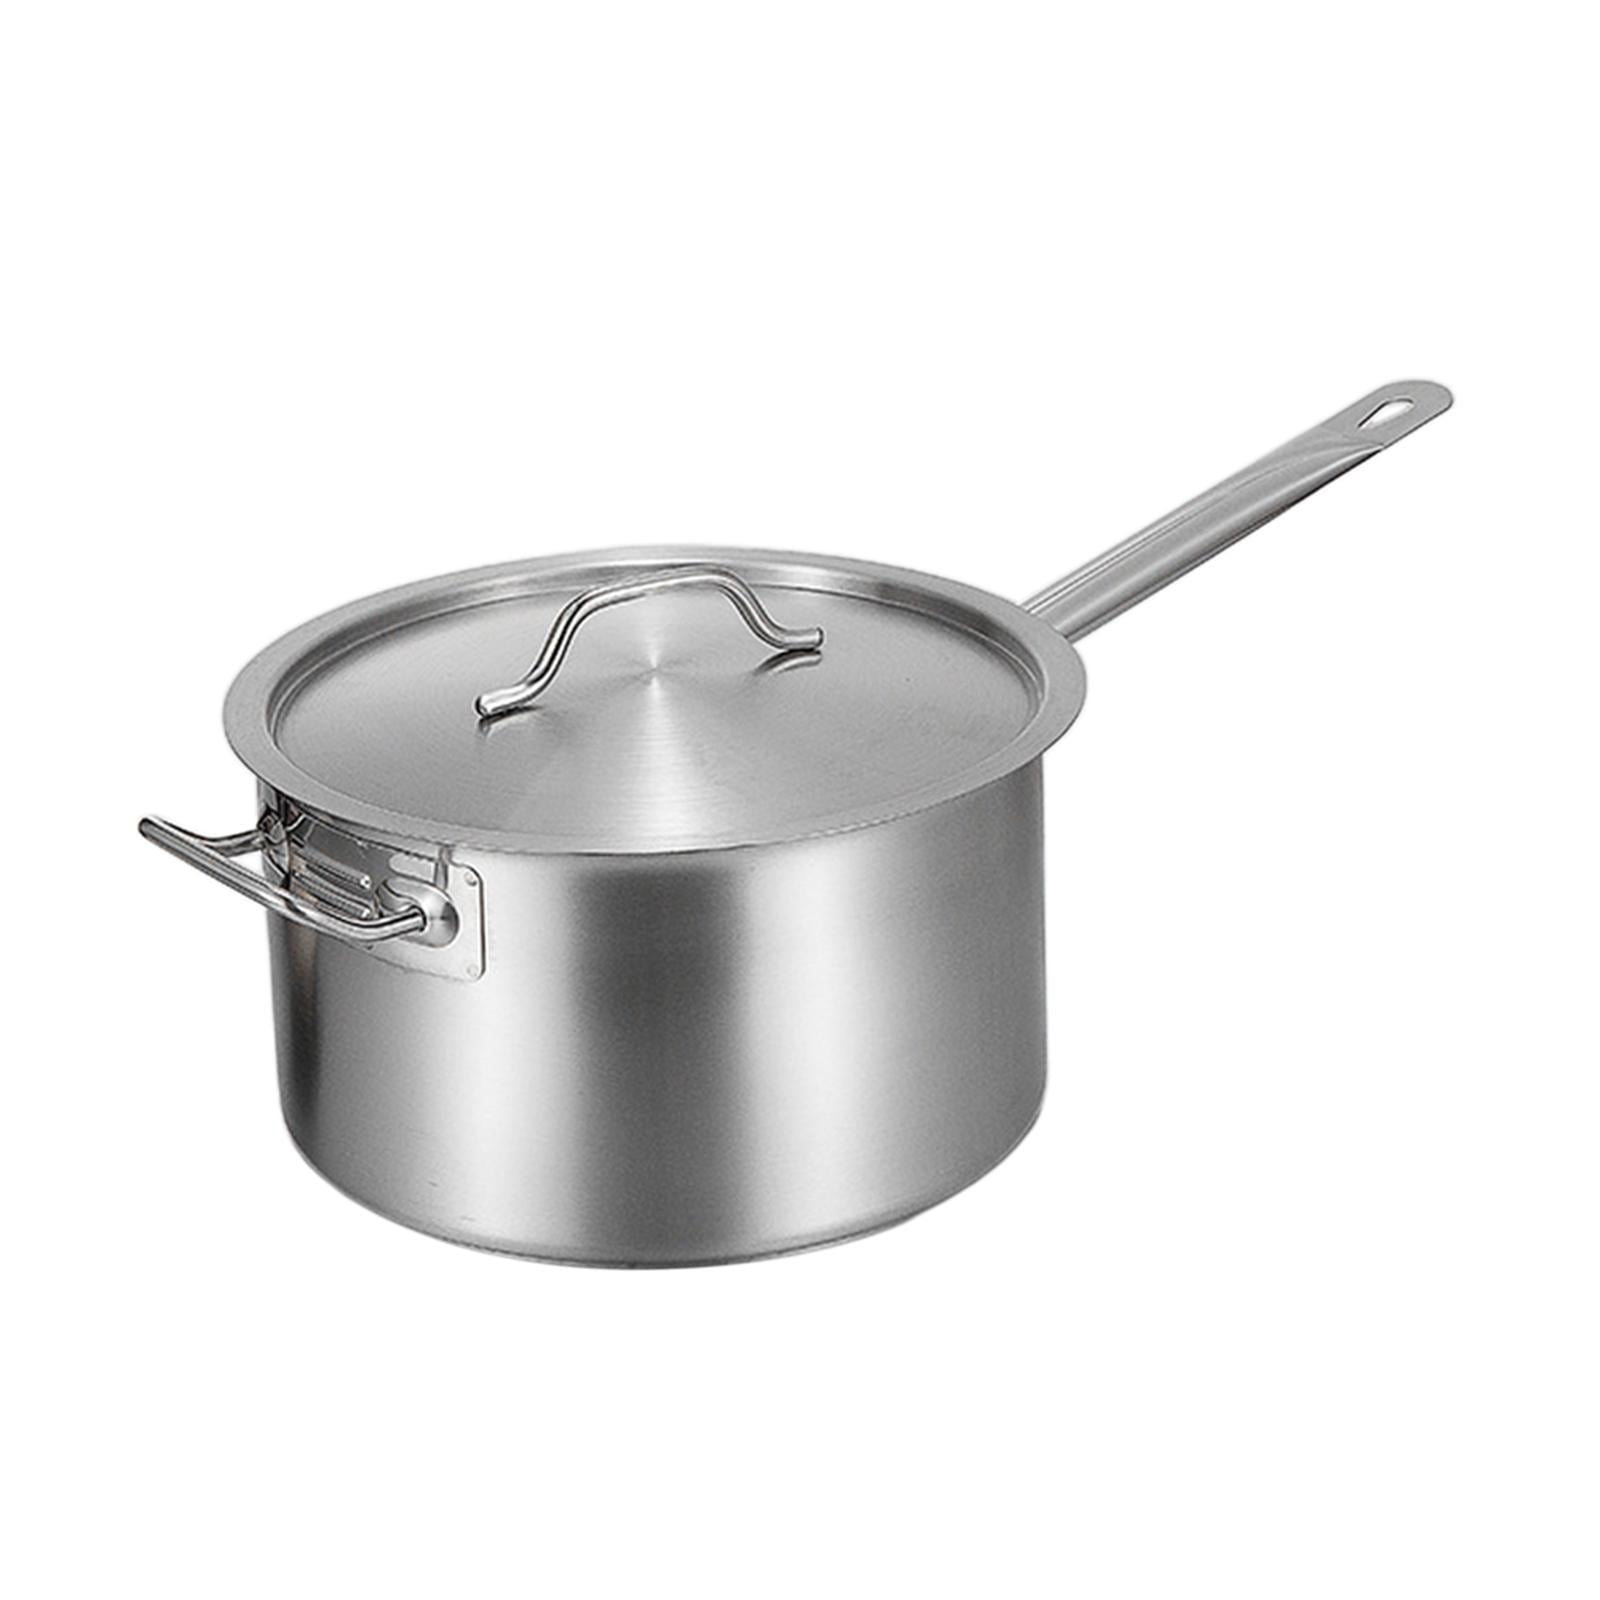 KANGXW 316L Stainless Steel Saucepans, 1.0 Quart Pan, with Pour Spout and Filter Glass Lid, Boiling Milk Pots, Sauce, Gravy, Pasta Stock Noodles Pot